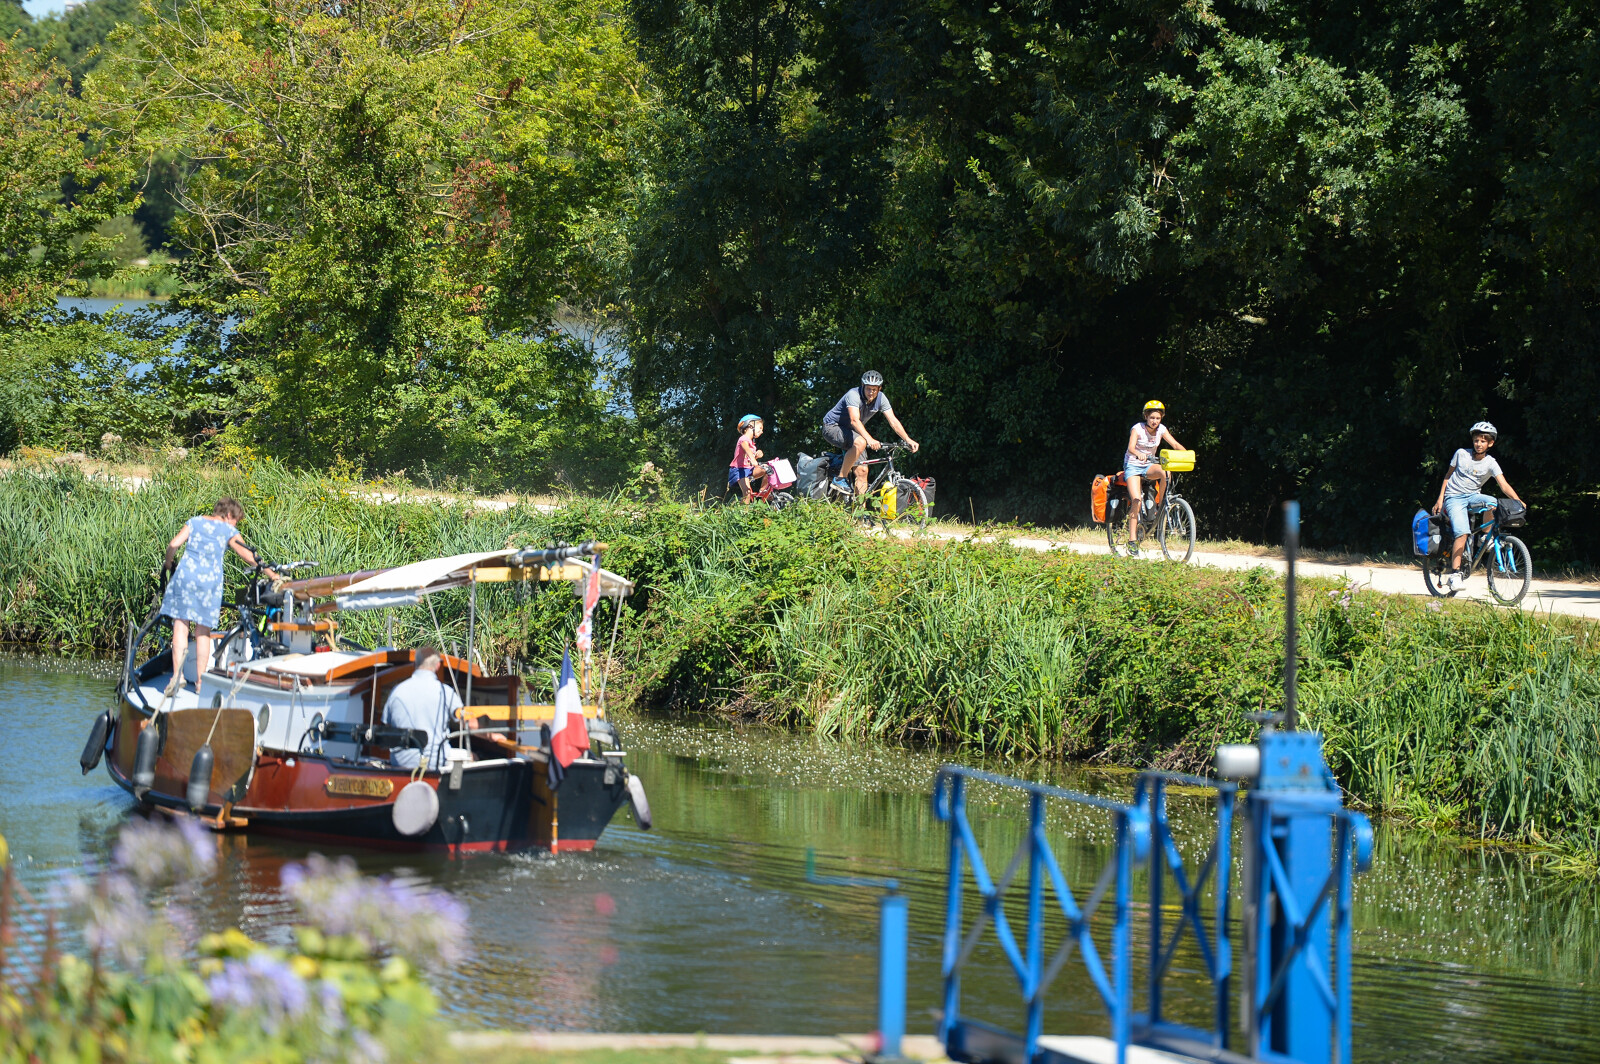 Cyclistes sur le halage et bateau sur la rivière.